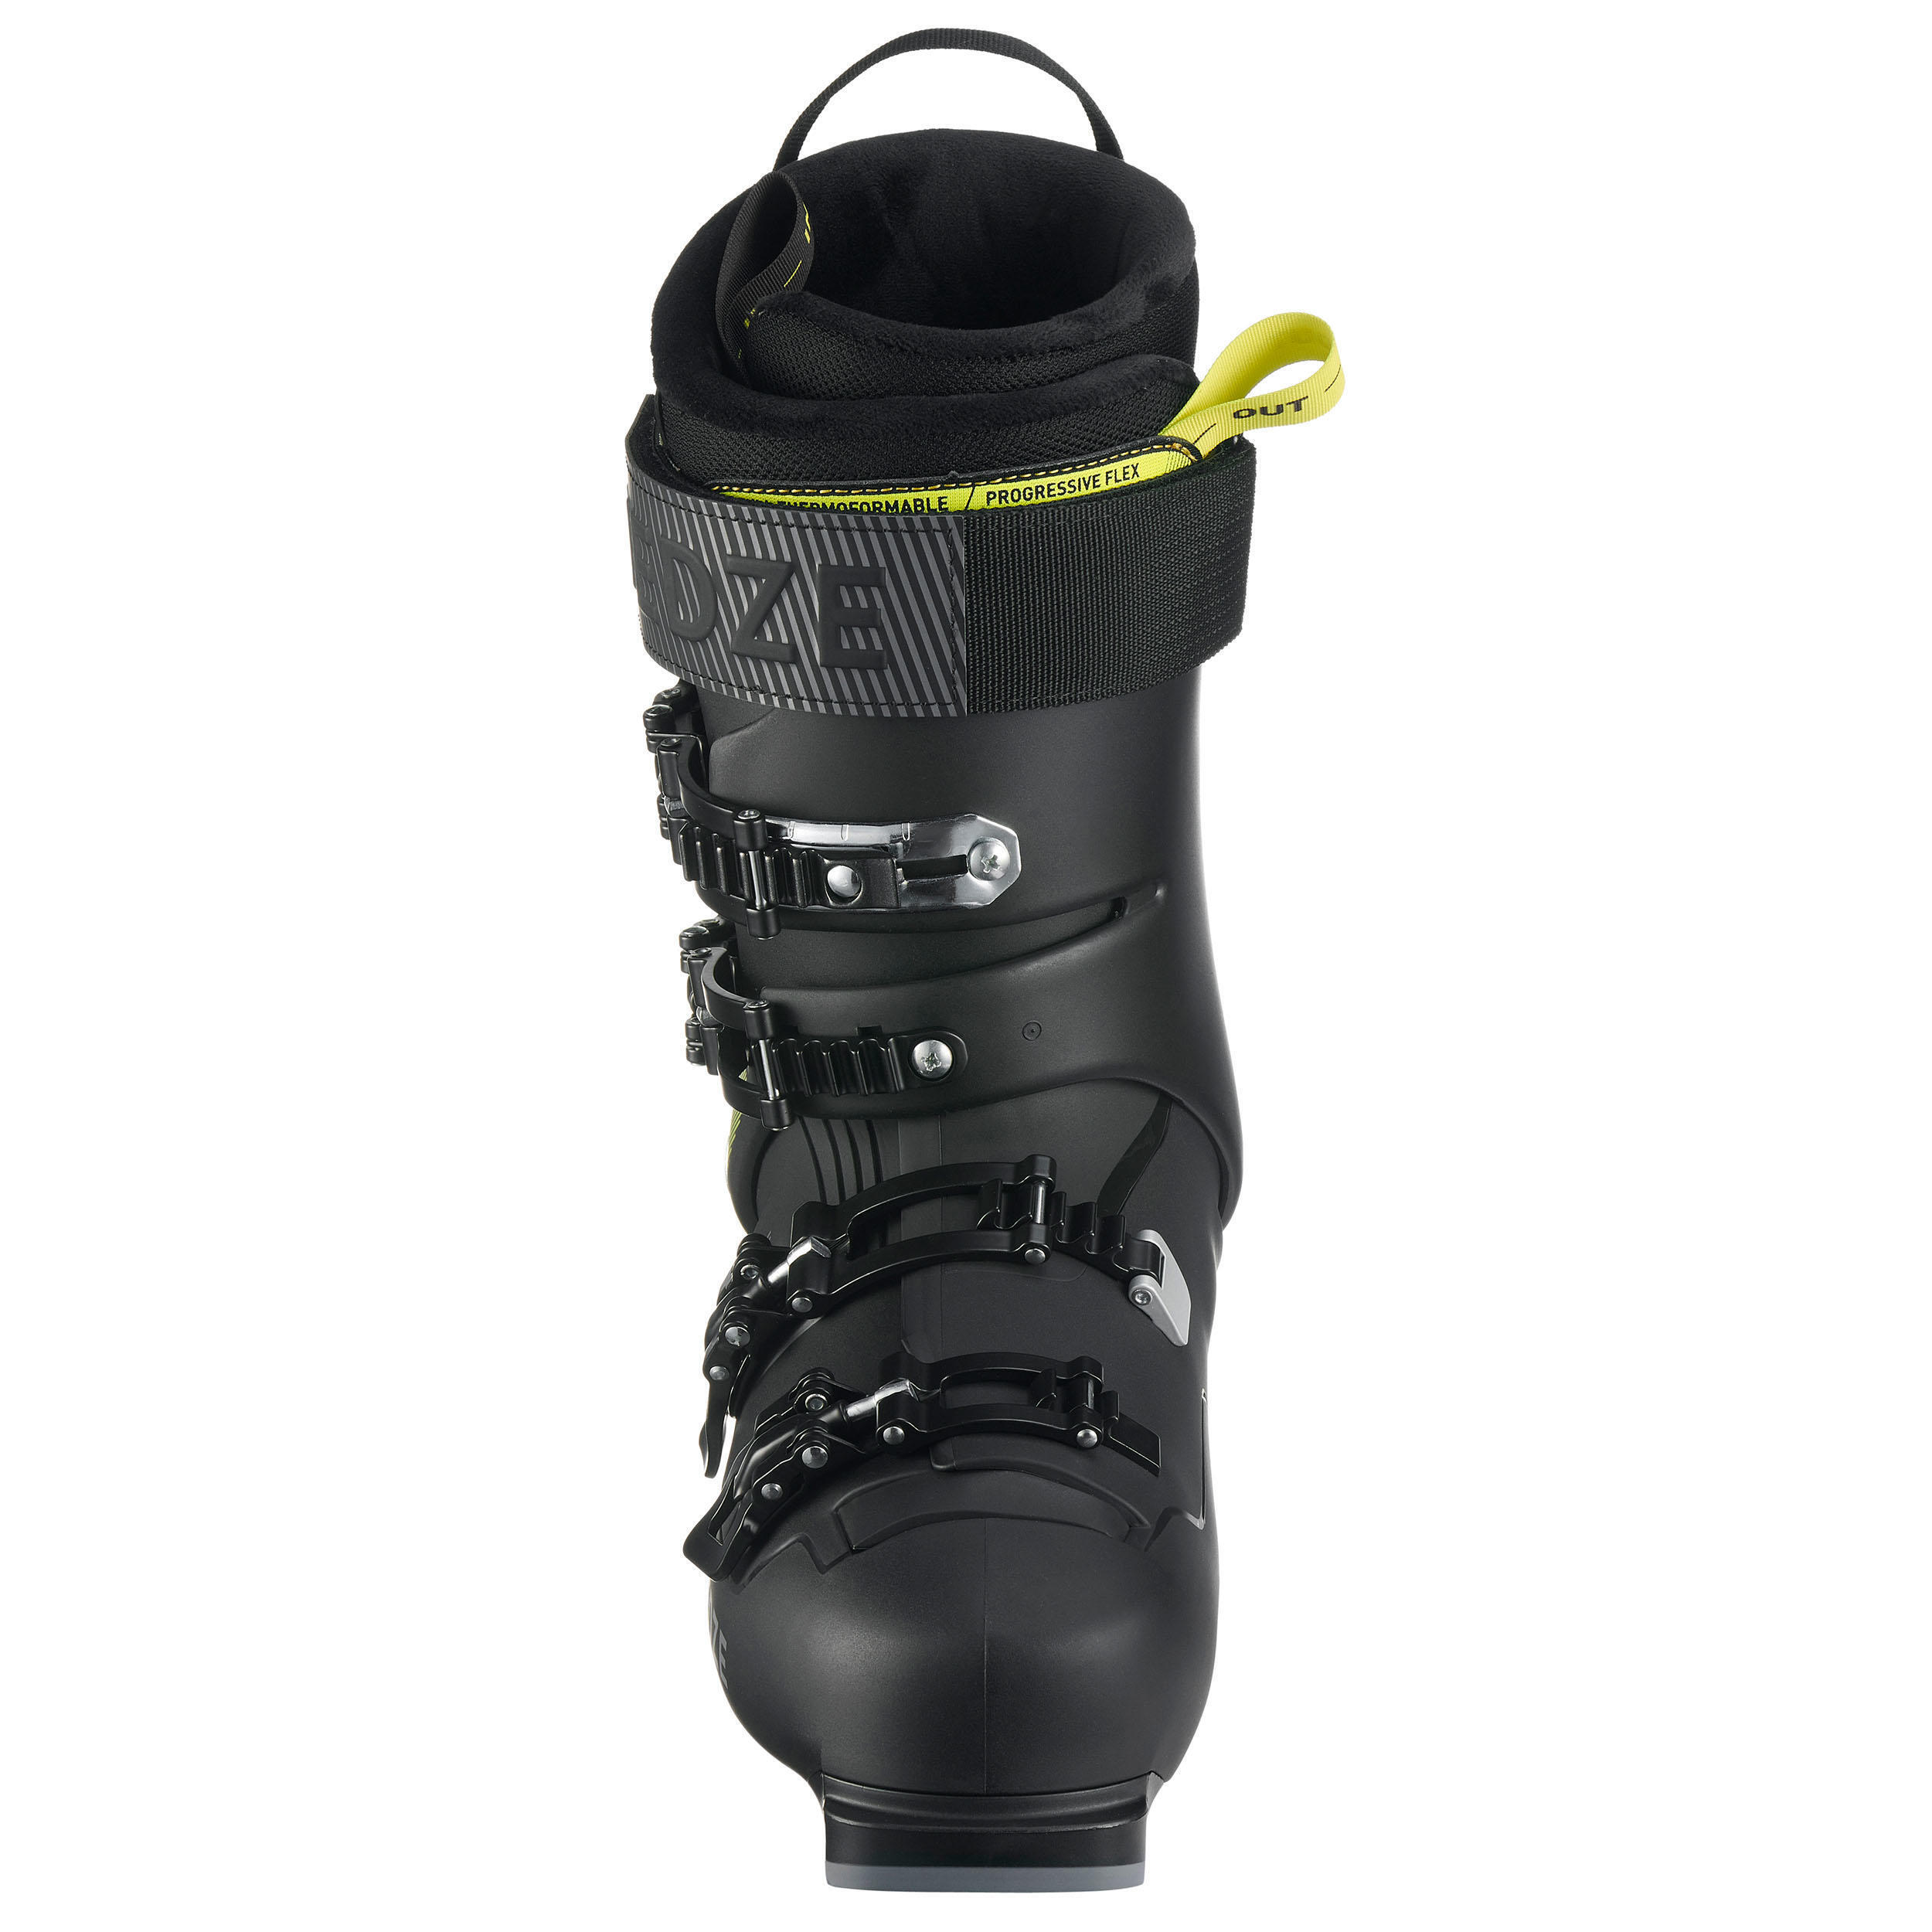 Refurbished Mens Downhill Ski Boots Fit Black Yellow - B Grade 7/7